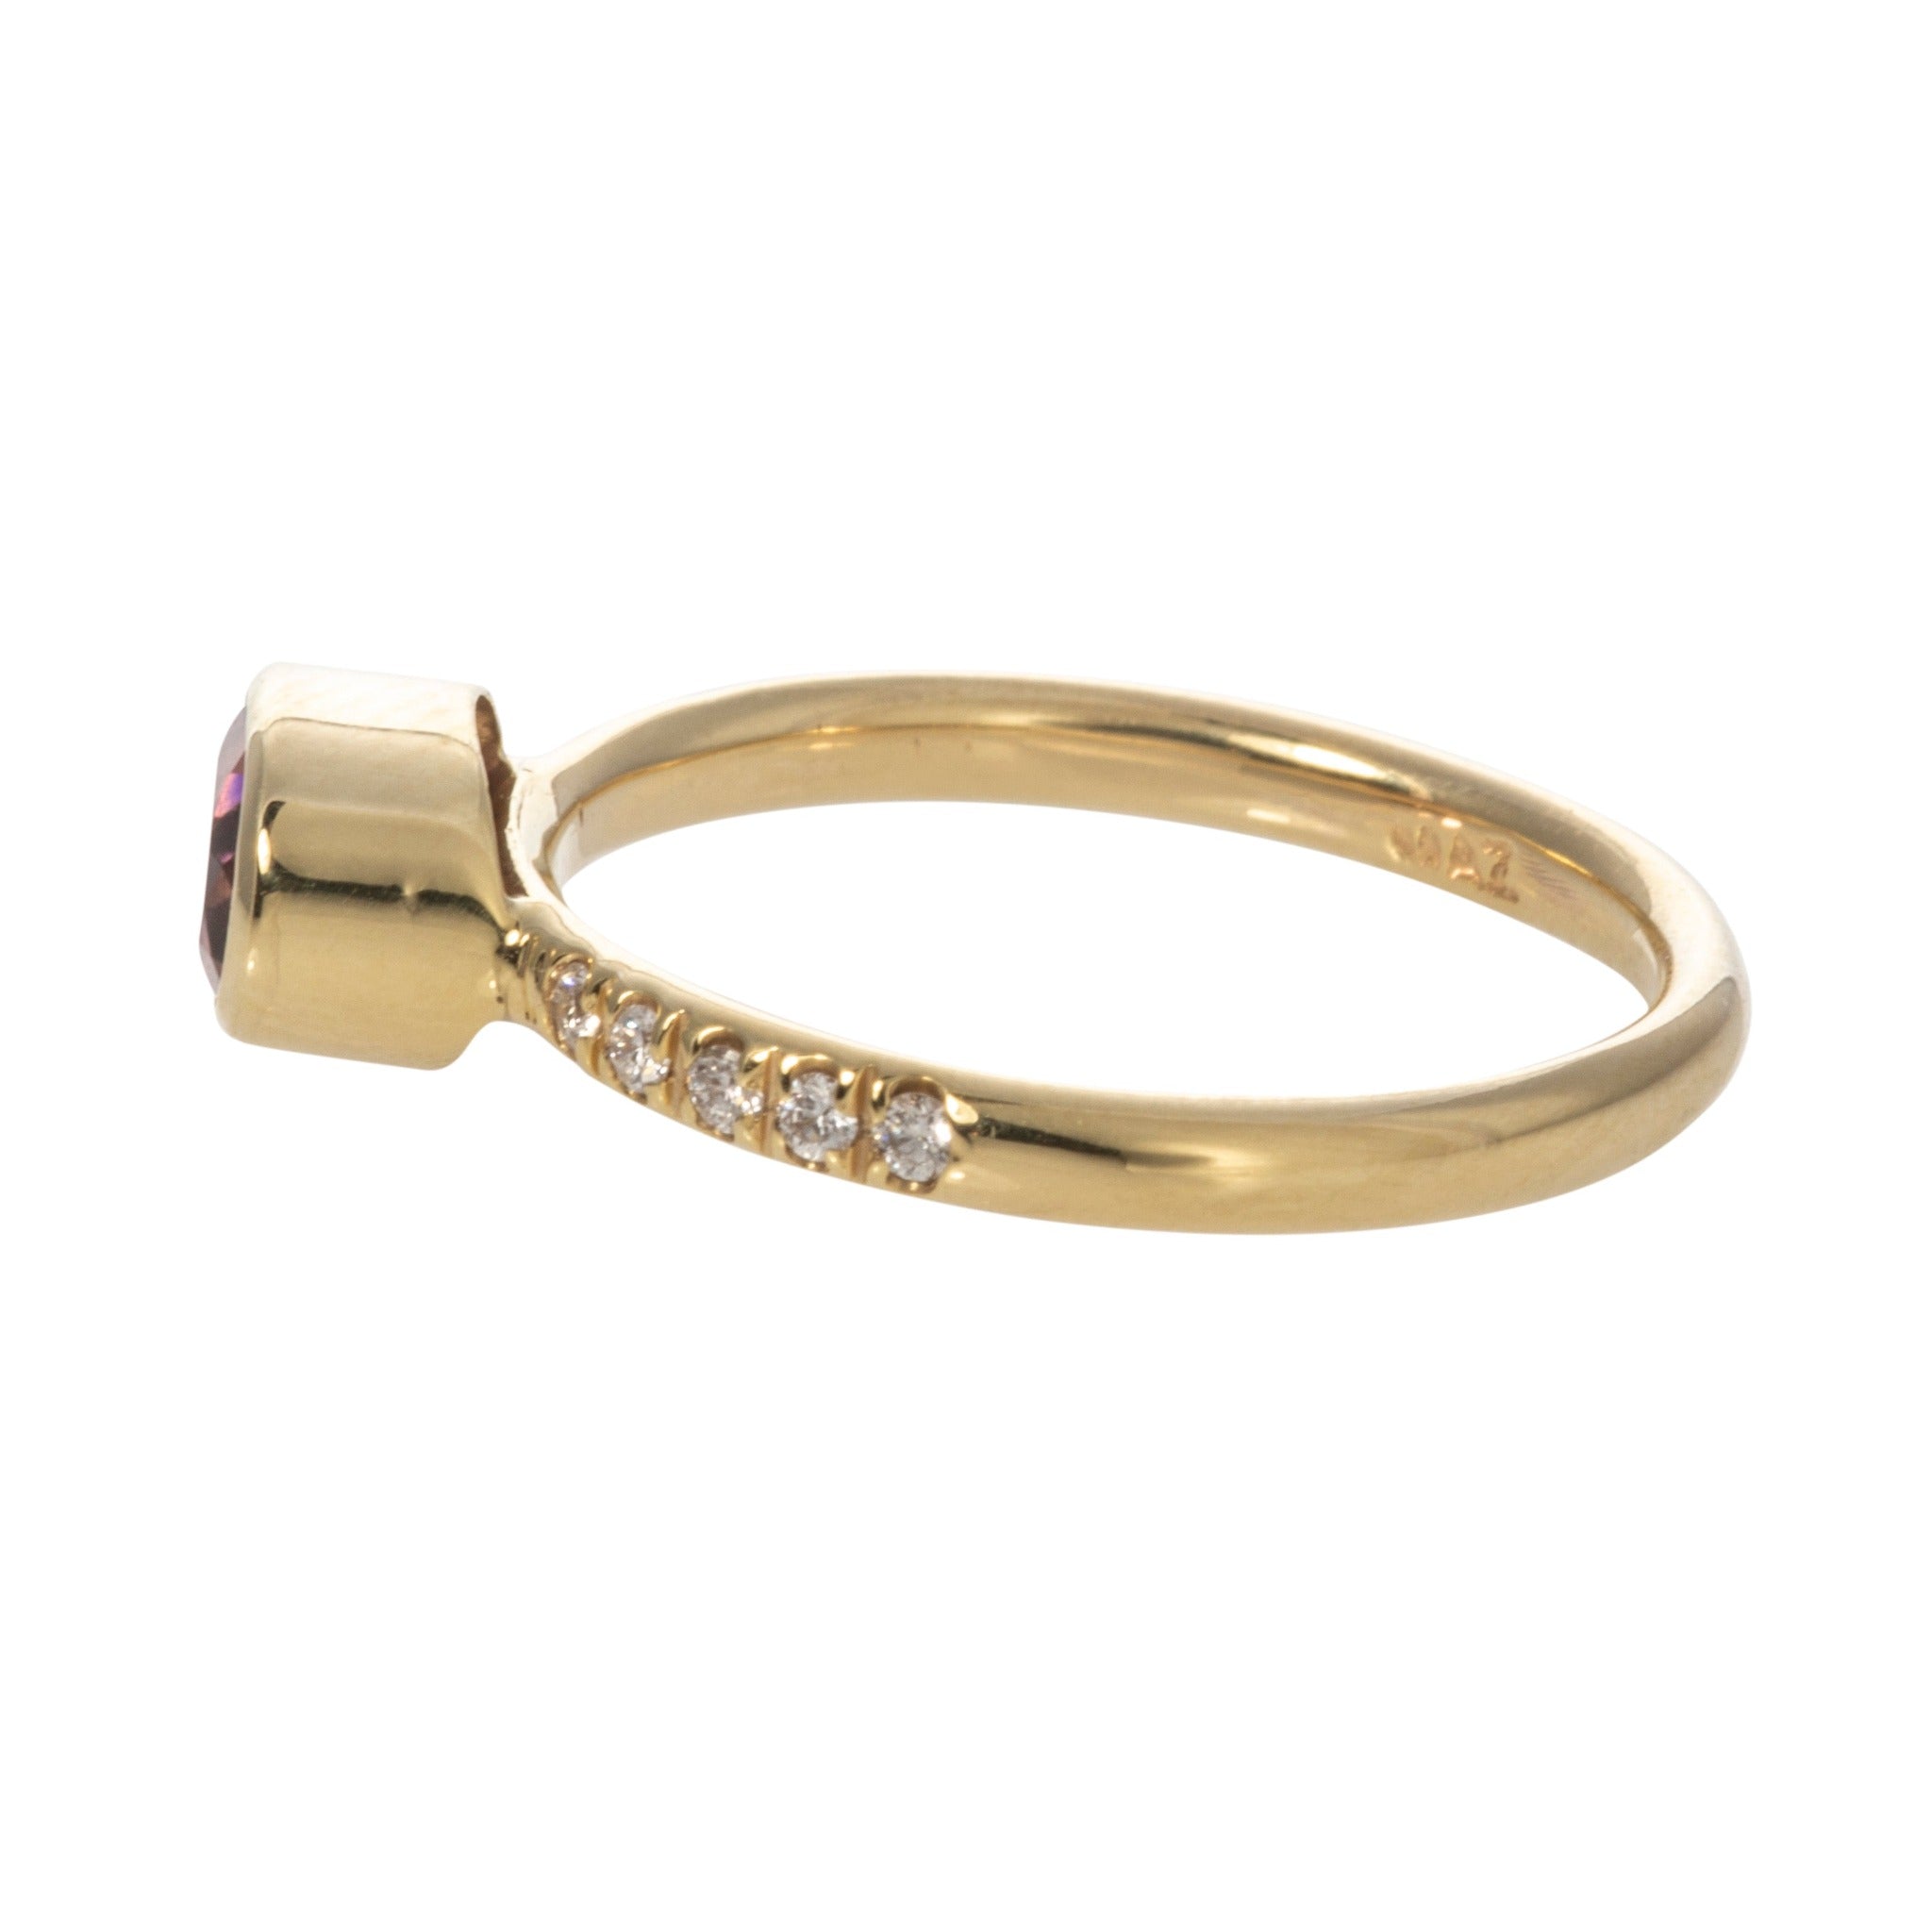 Mazza Pink Tourmaline & Diamond 14K Yellow Gold Ring